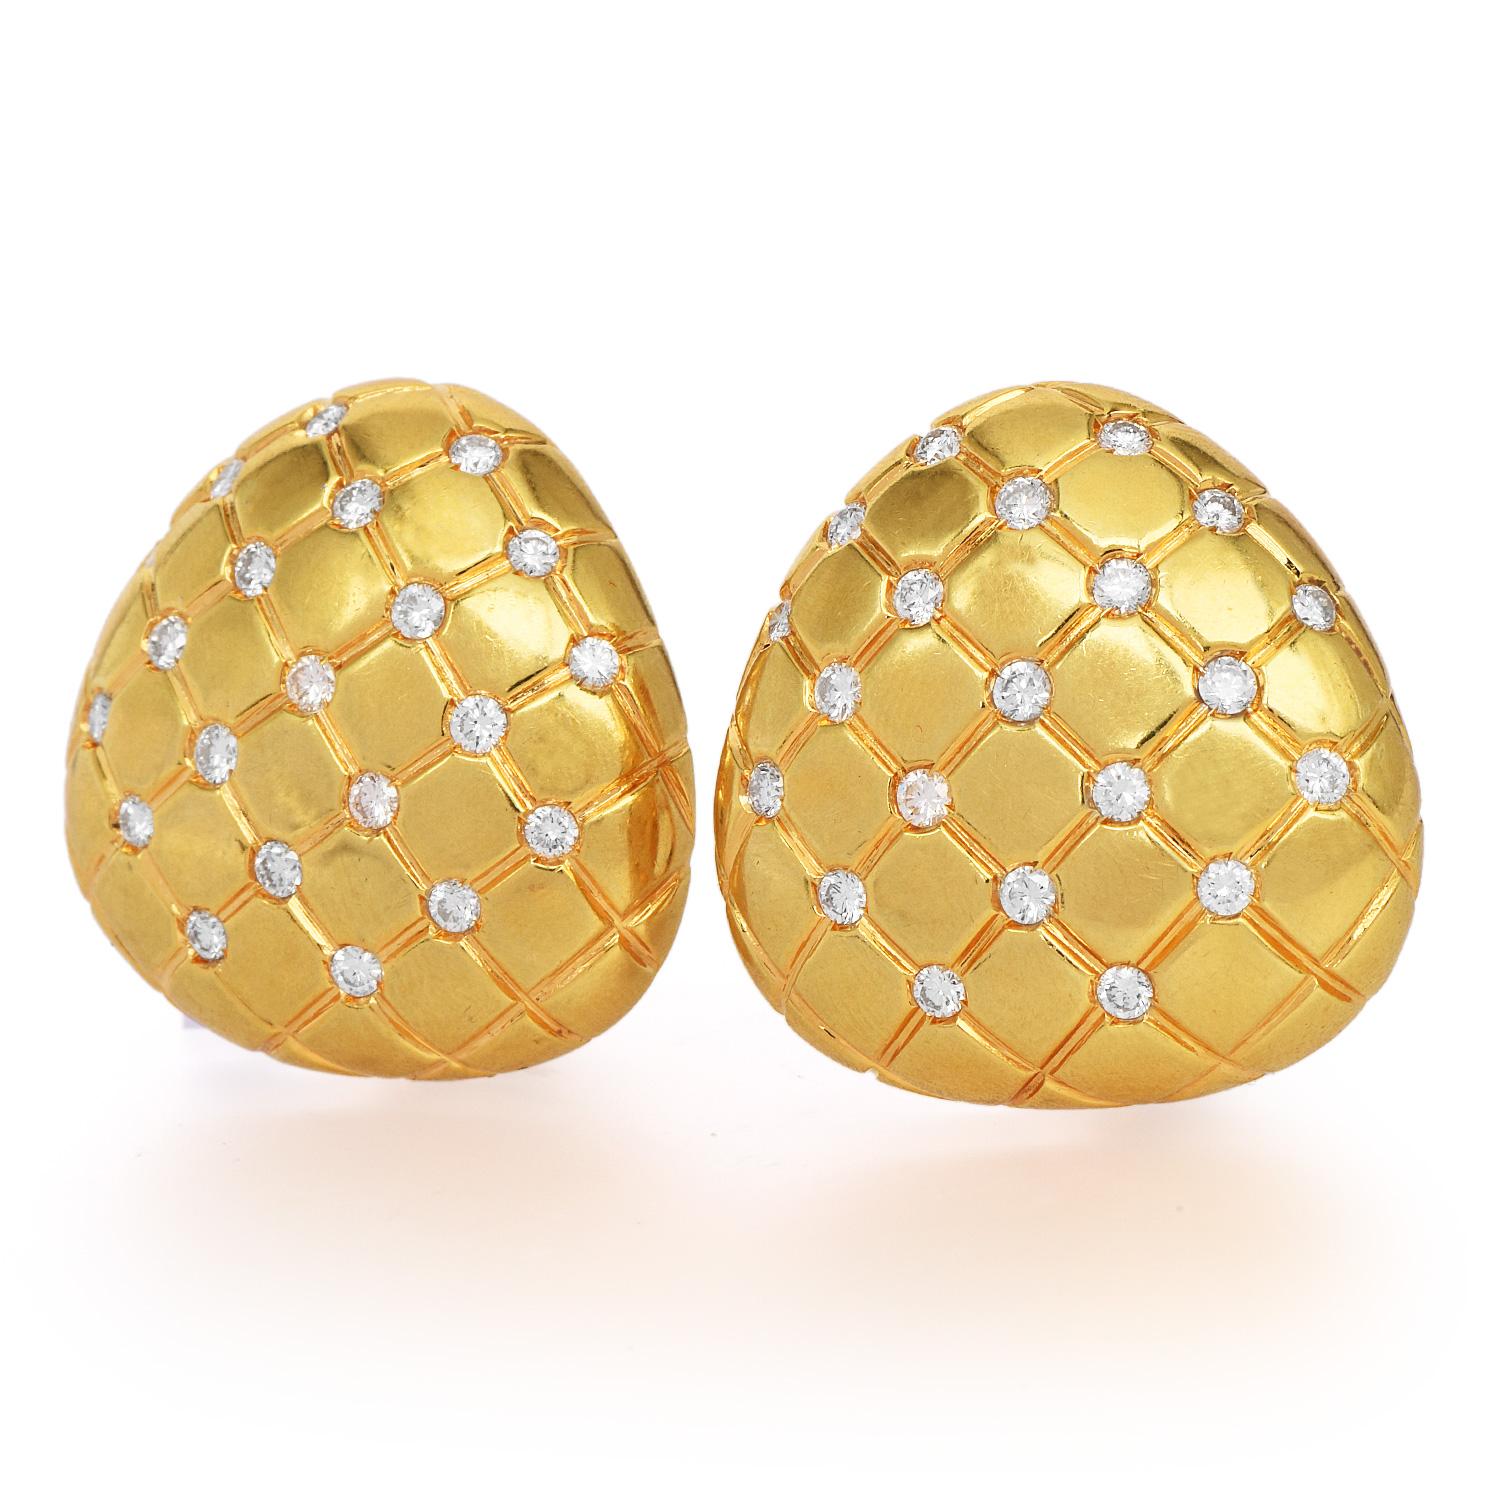  Boucles d'oreilles à clip en forme de trillion coussin matelassé des années 1990, avec une luxueuse finition hautement polie.
Réalisé en or jaune massif 18 carats, ce look est complété par (42) diamants véritables de taille ronde, sertis encastrés,